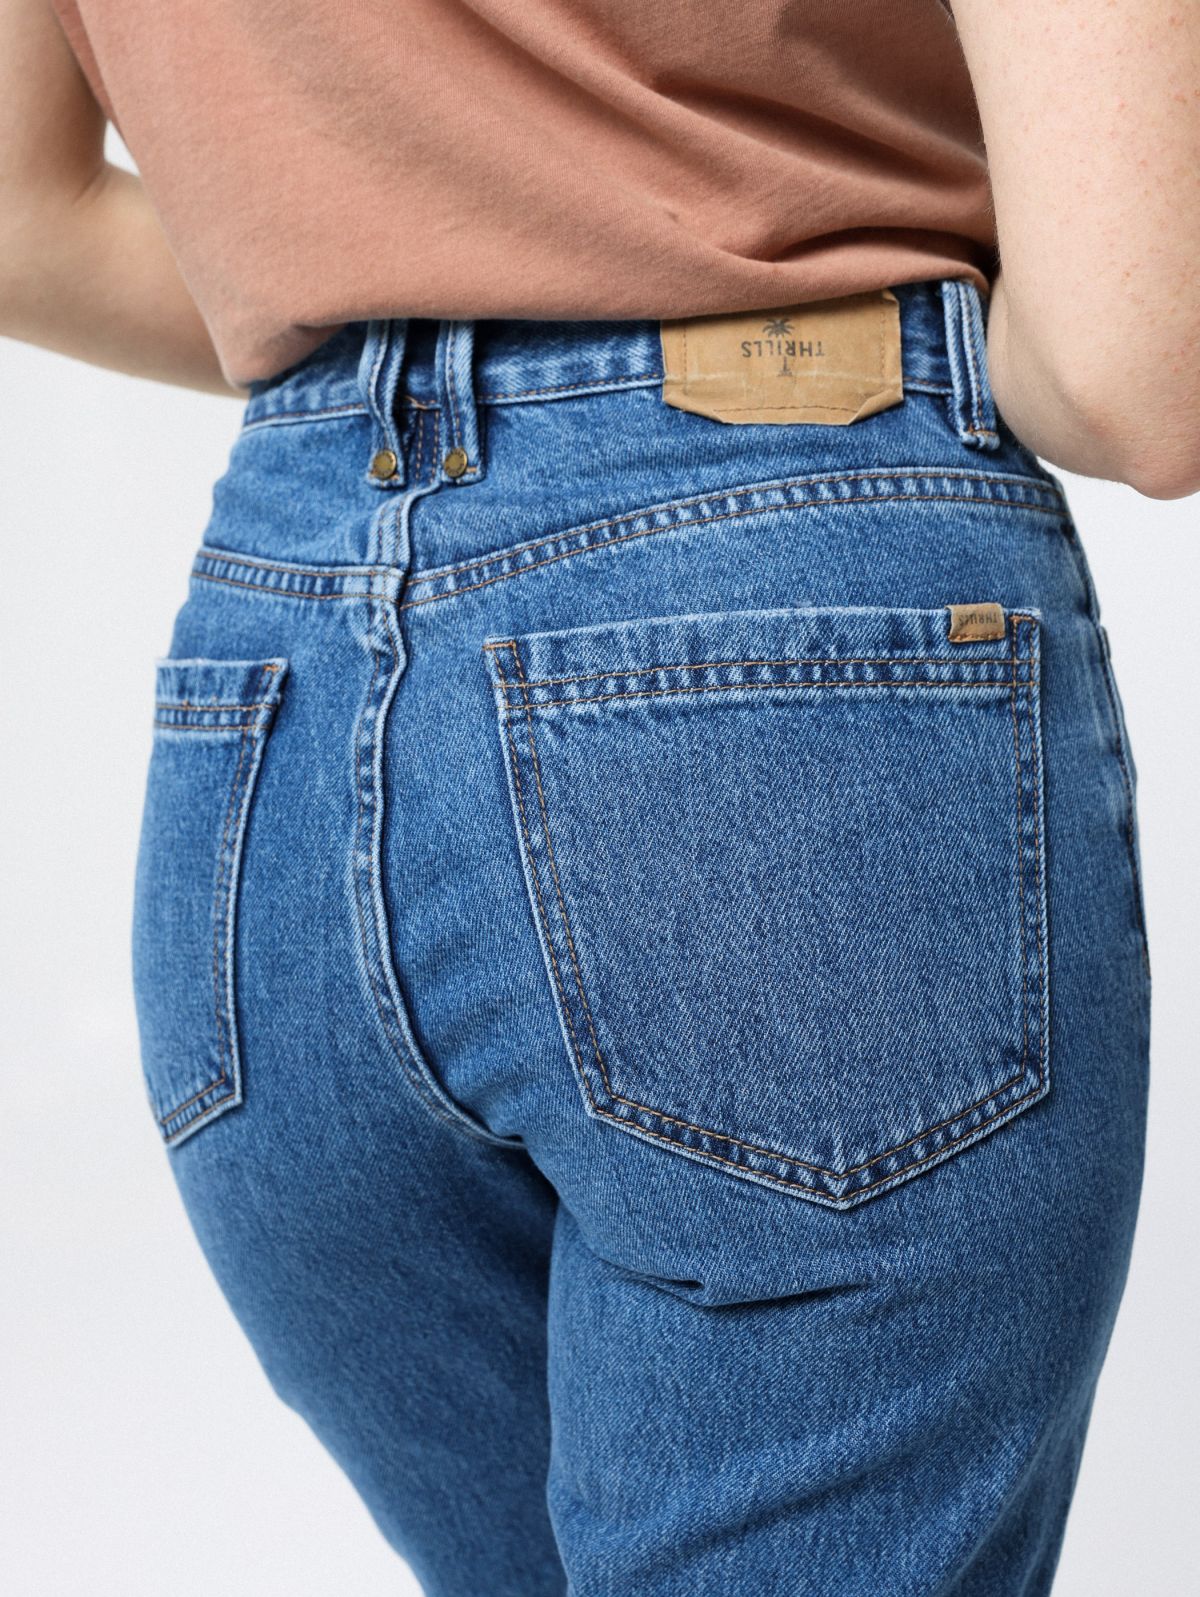  ג'ינס בגזרה מתרחבת של THRILLS